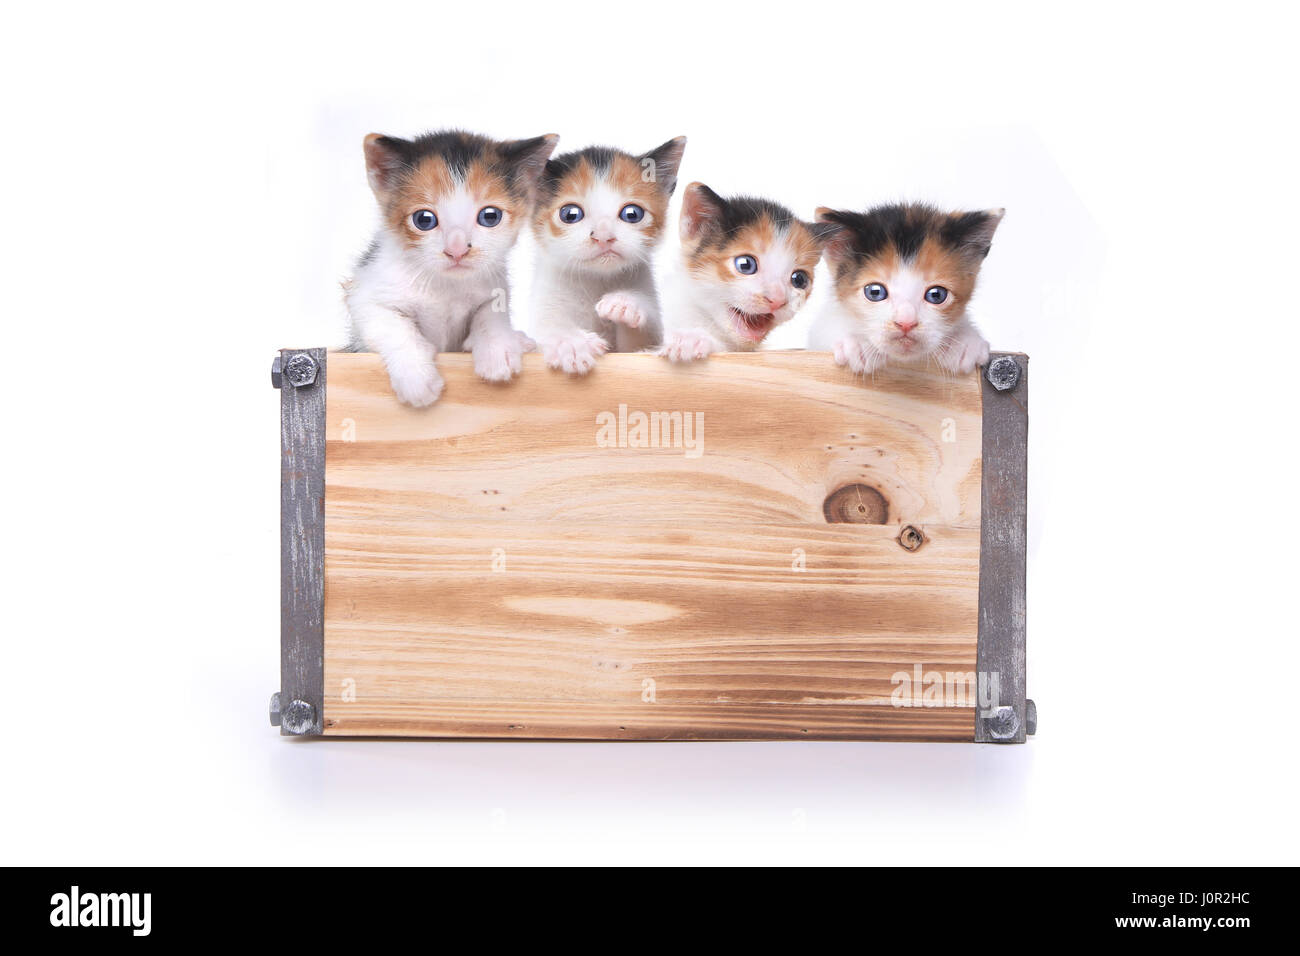 Fort de 3 adorable bébé de la semaine chatons en attente d'être adopté Banque D'Images